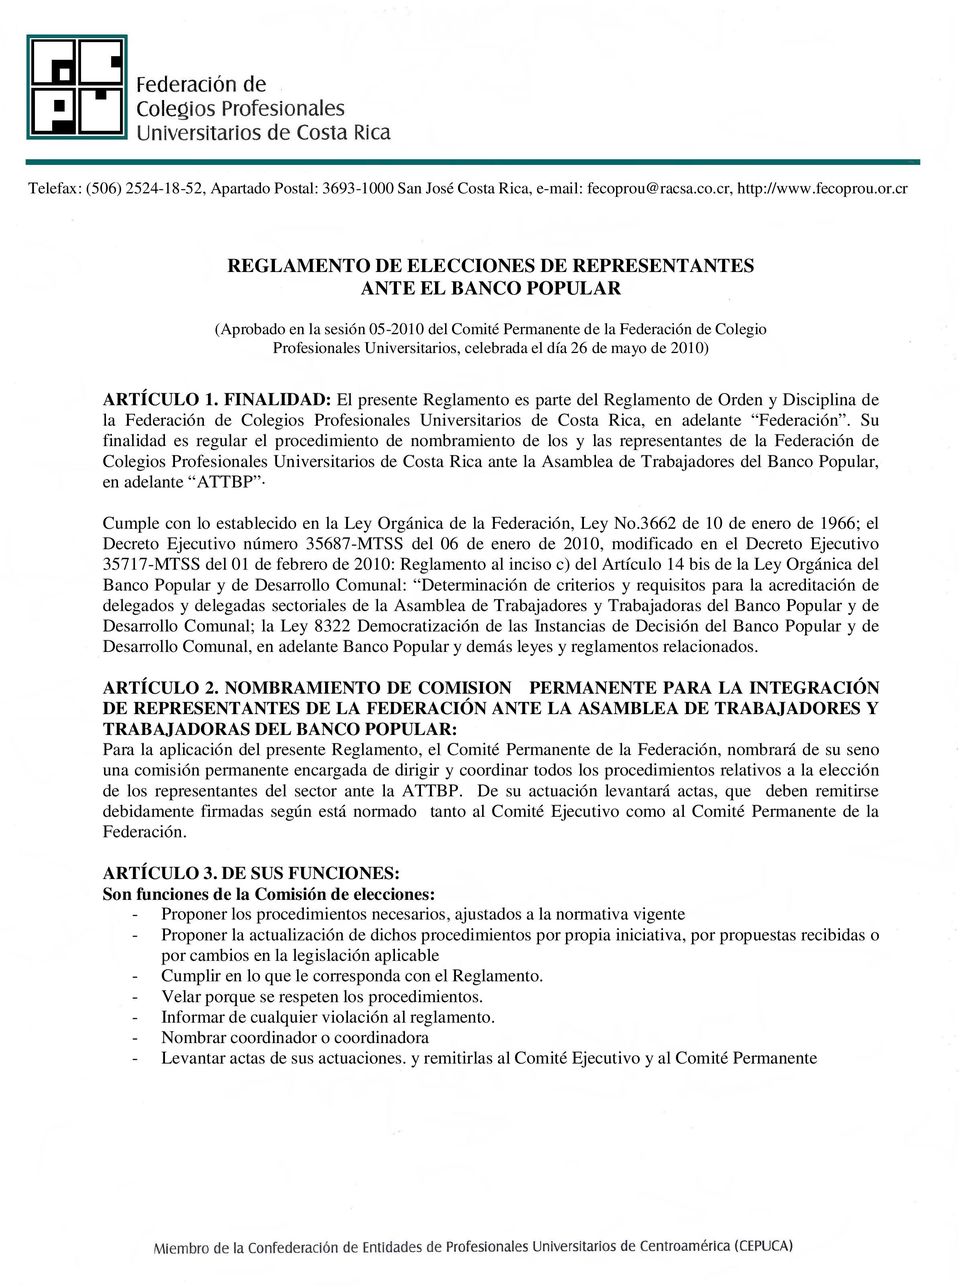 FINALIDAD: El presente Reglamento es parte del Reglamento de Orden y Disciplina de la Federación de Colegios Profesionales Universitarios de Costa Rica, en adelante Federación.